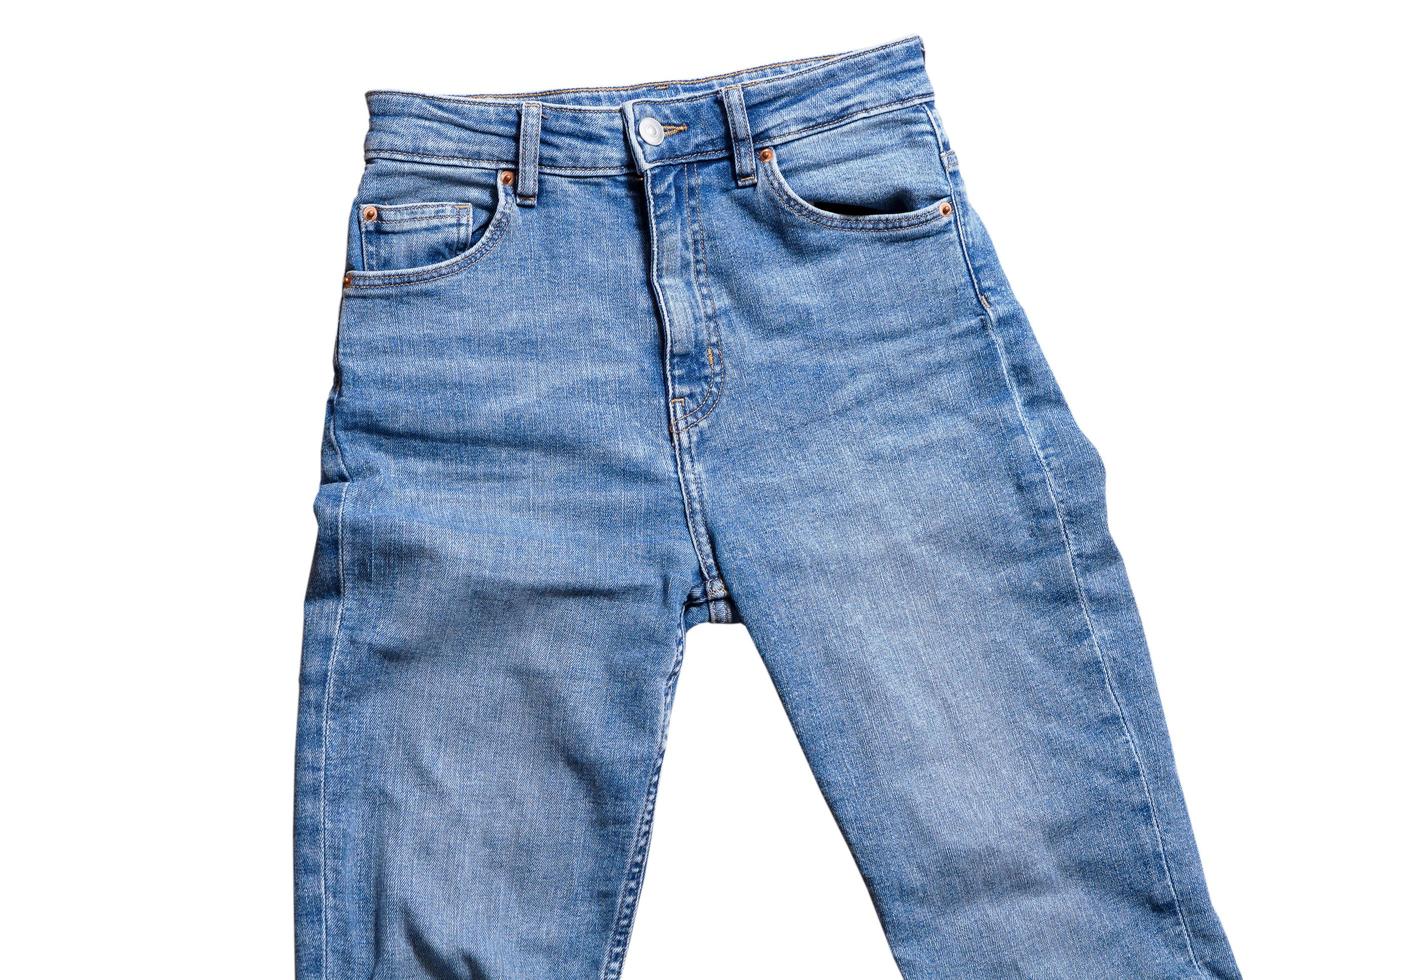 jeans isolerade på vitt, jeansbyxor isolerade, vikta blå jeans isolerade på vitt, sommarkläder, tygelement håna foto